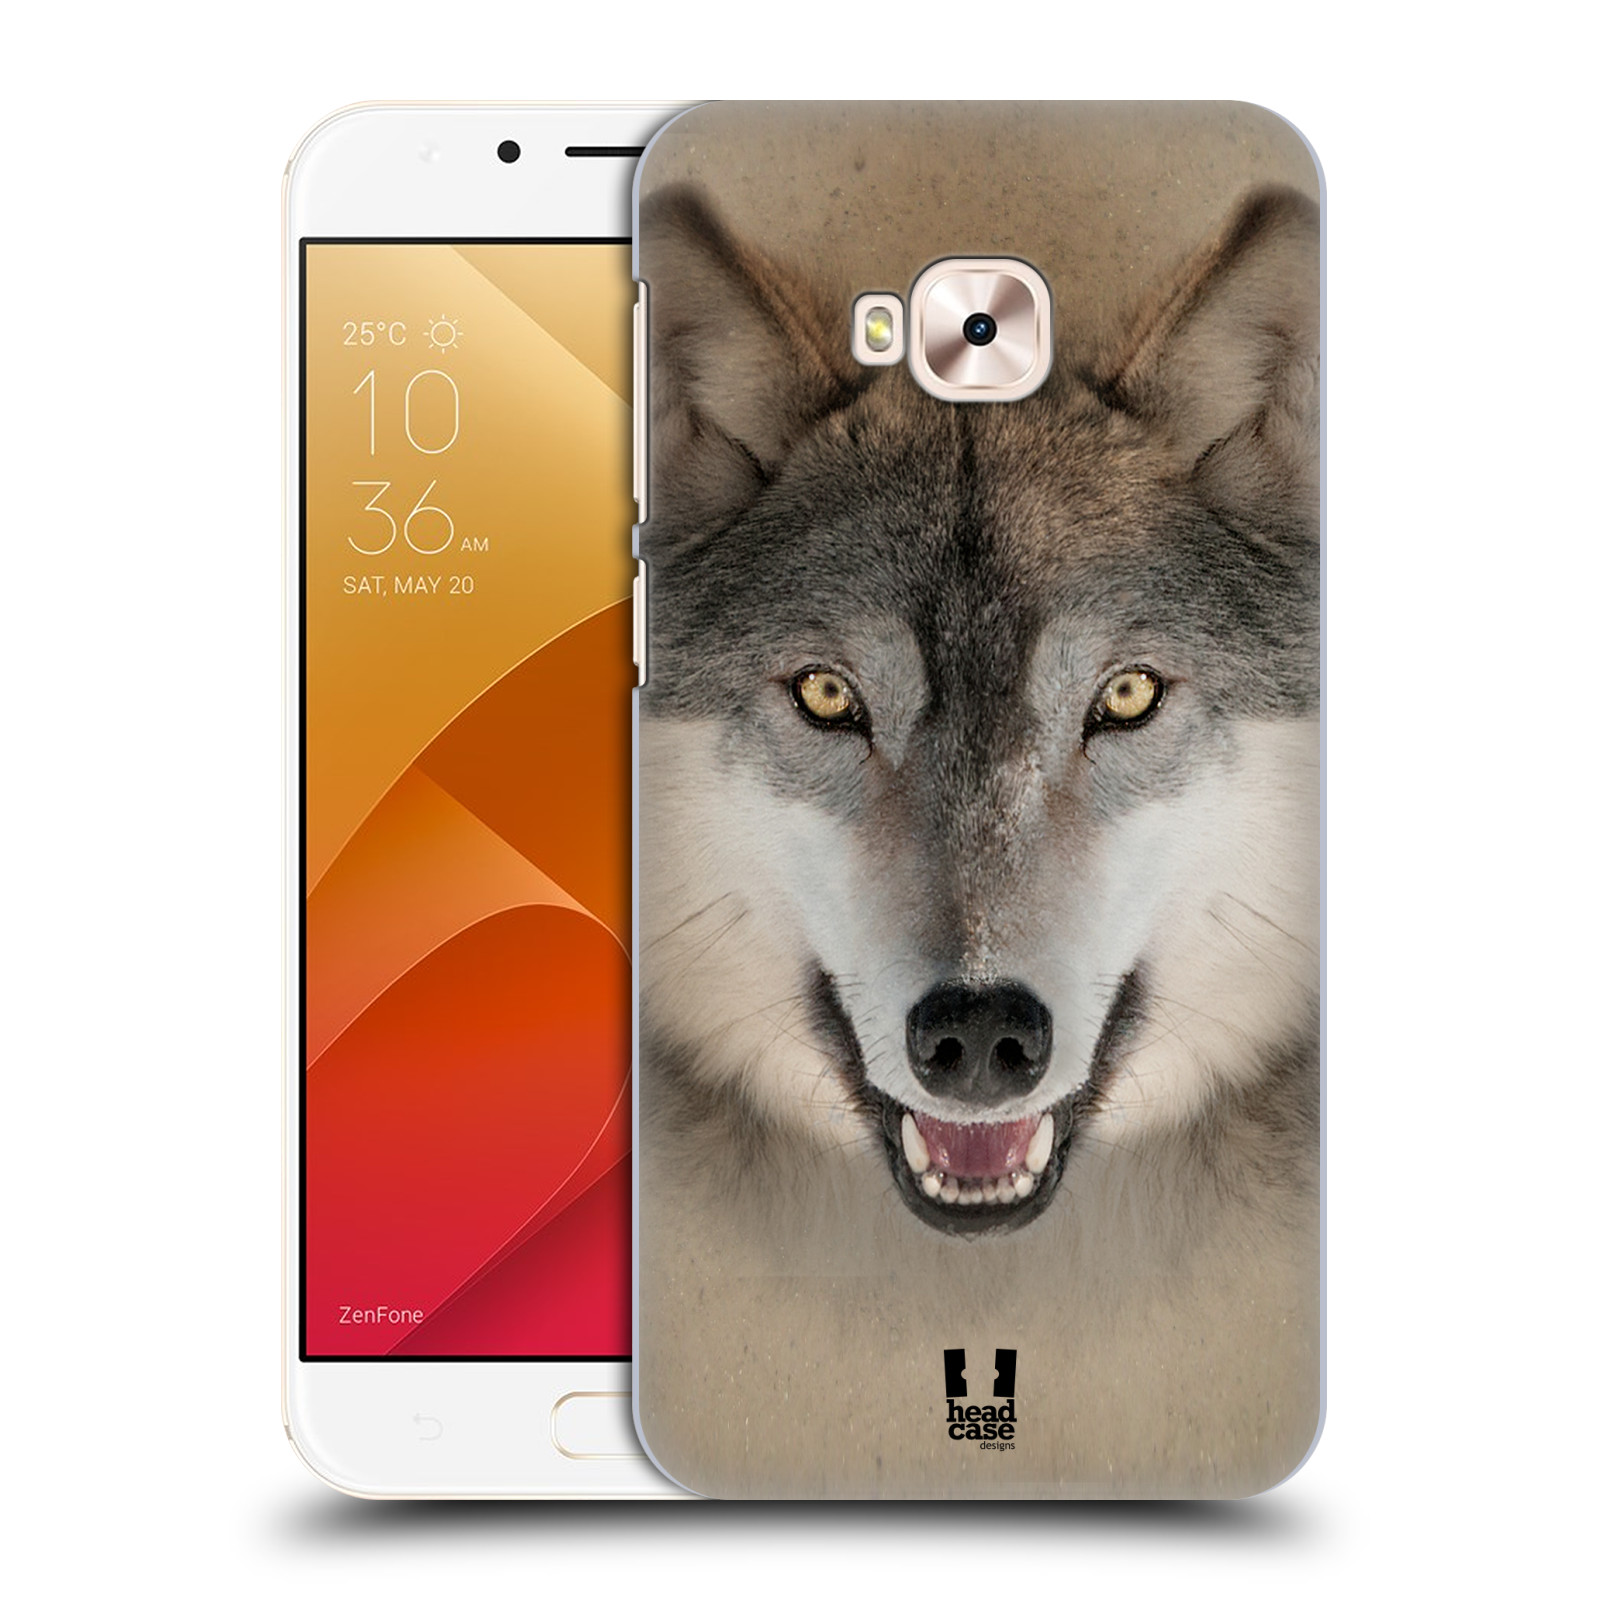 HEAD CASE plastový obal na mobil Asus Zenfone 4 Selfie Pro ZD552KL vzor Zvířecí tváře 2 vlk šedý